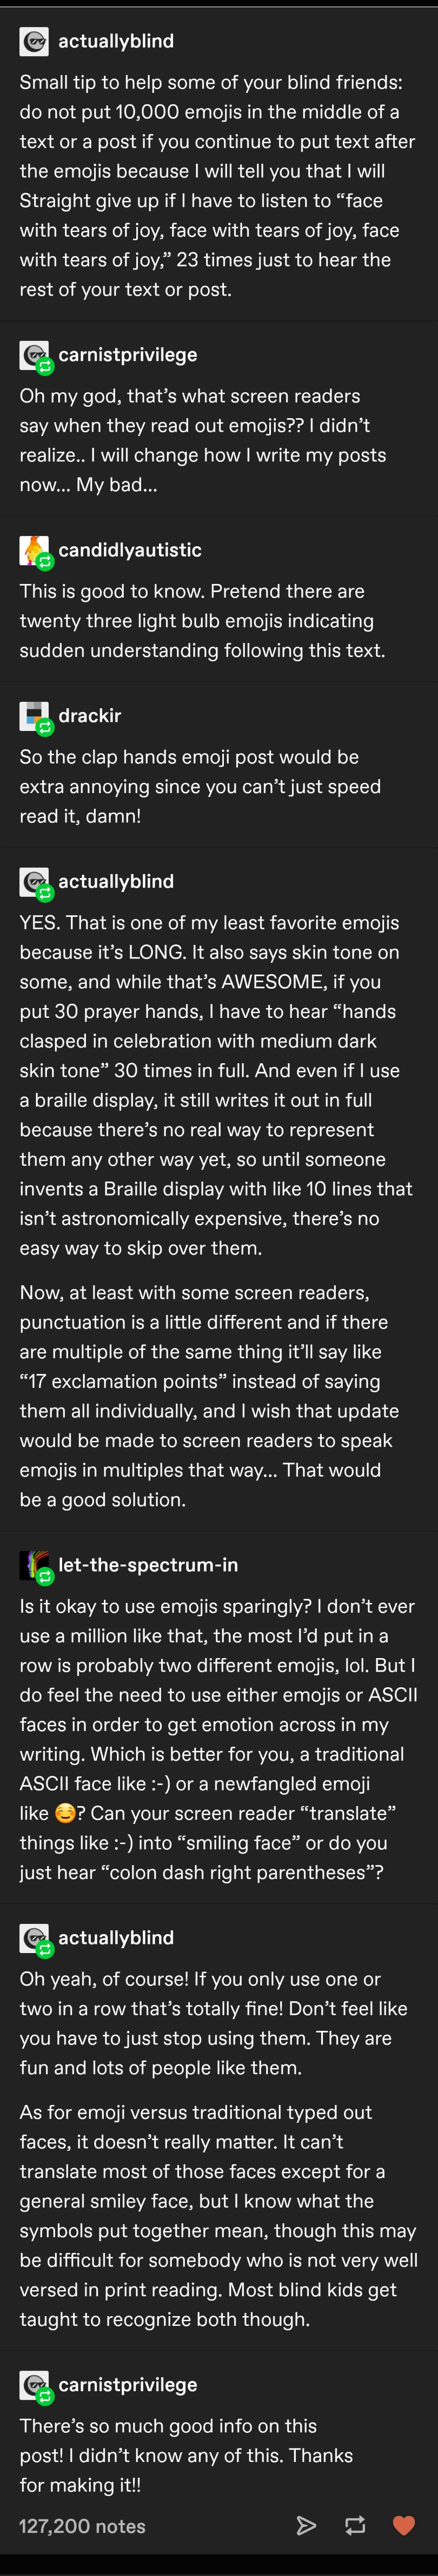 The blind vs emoji